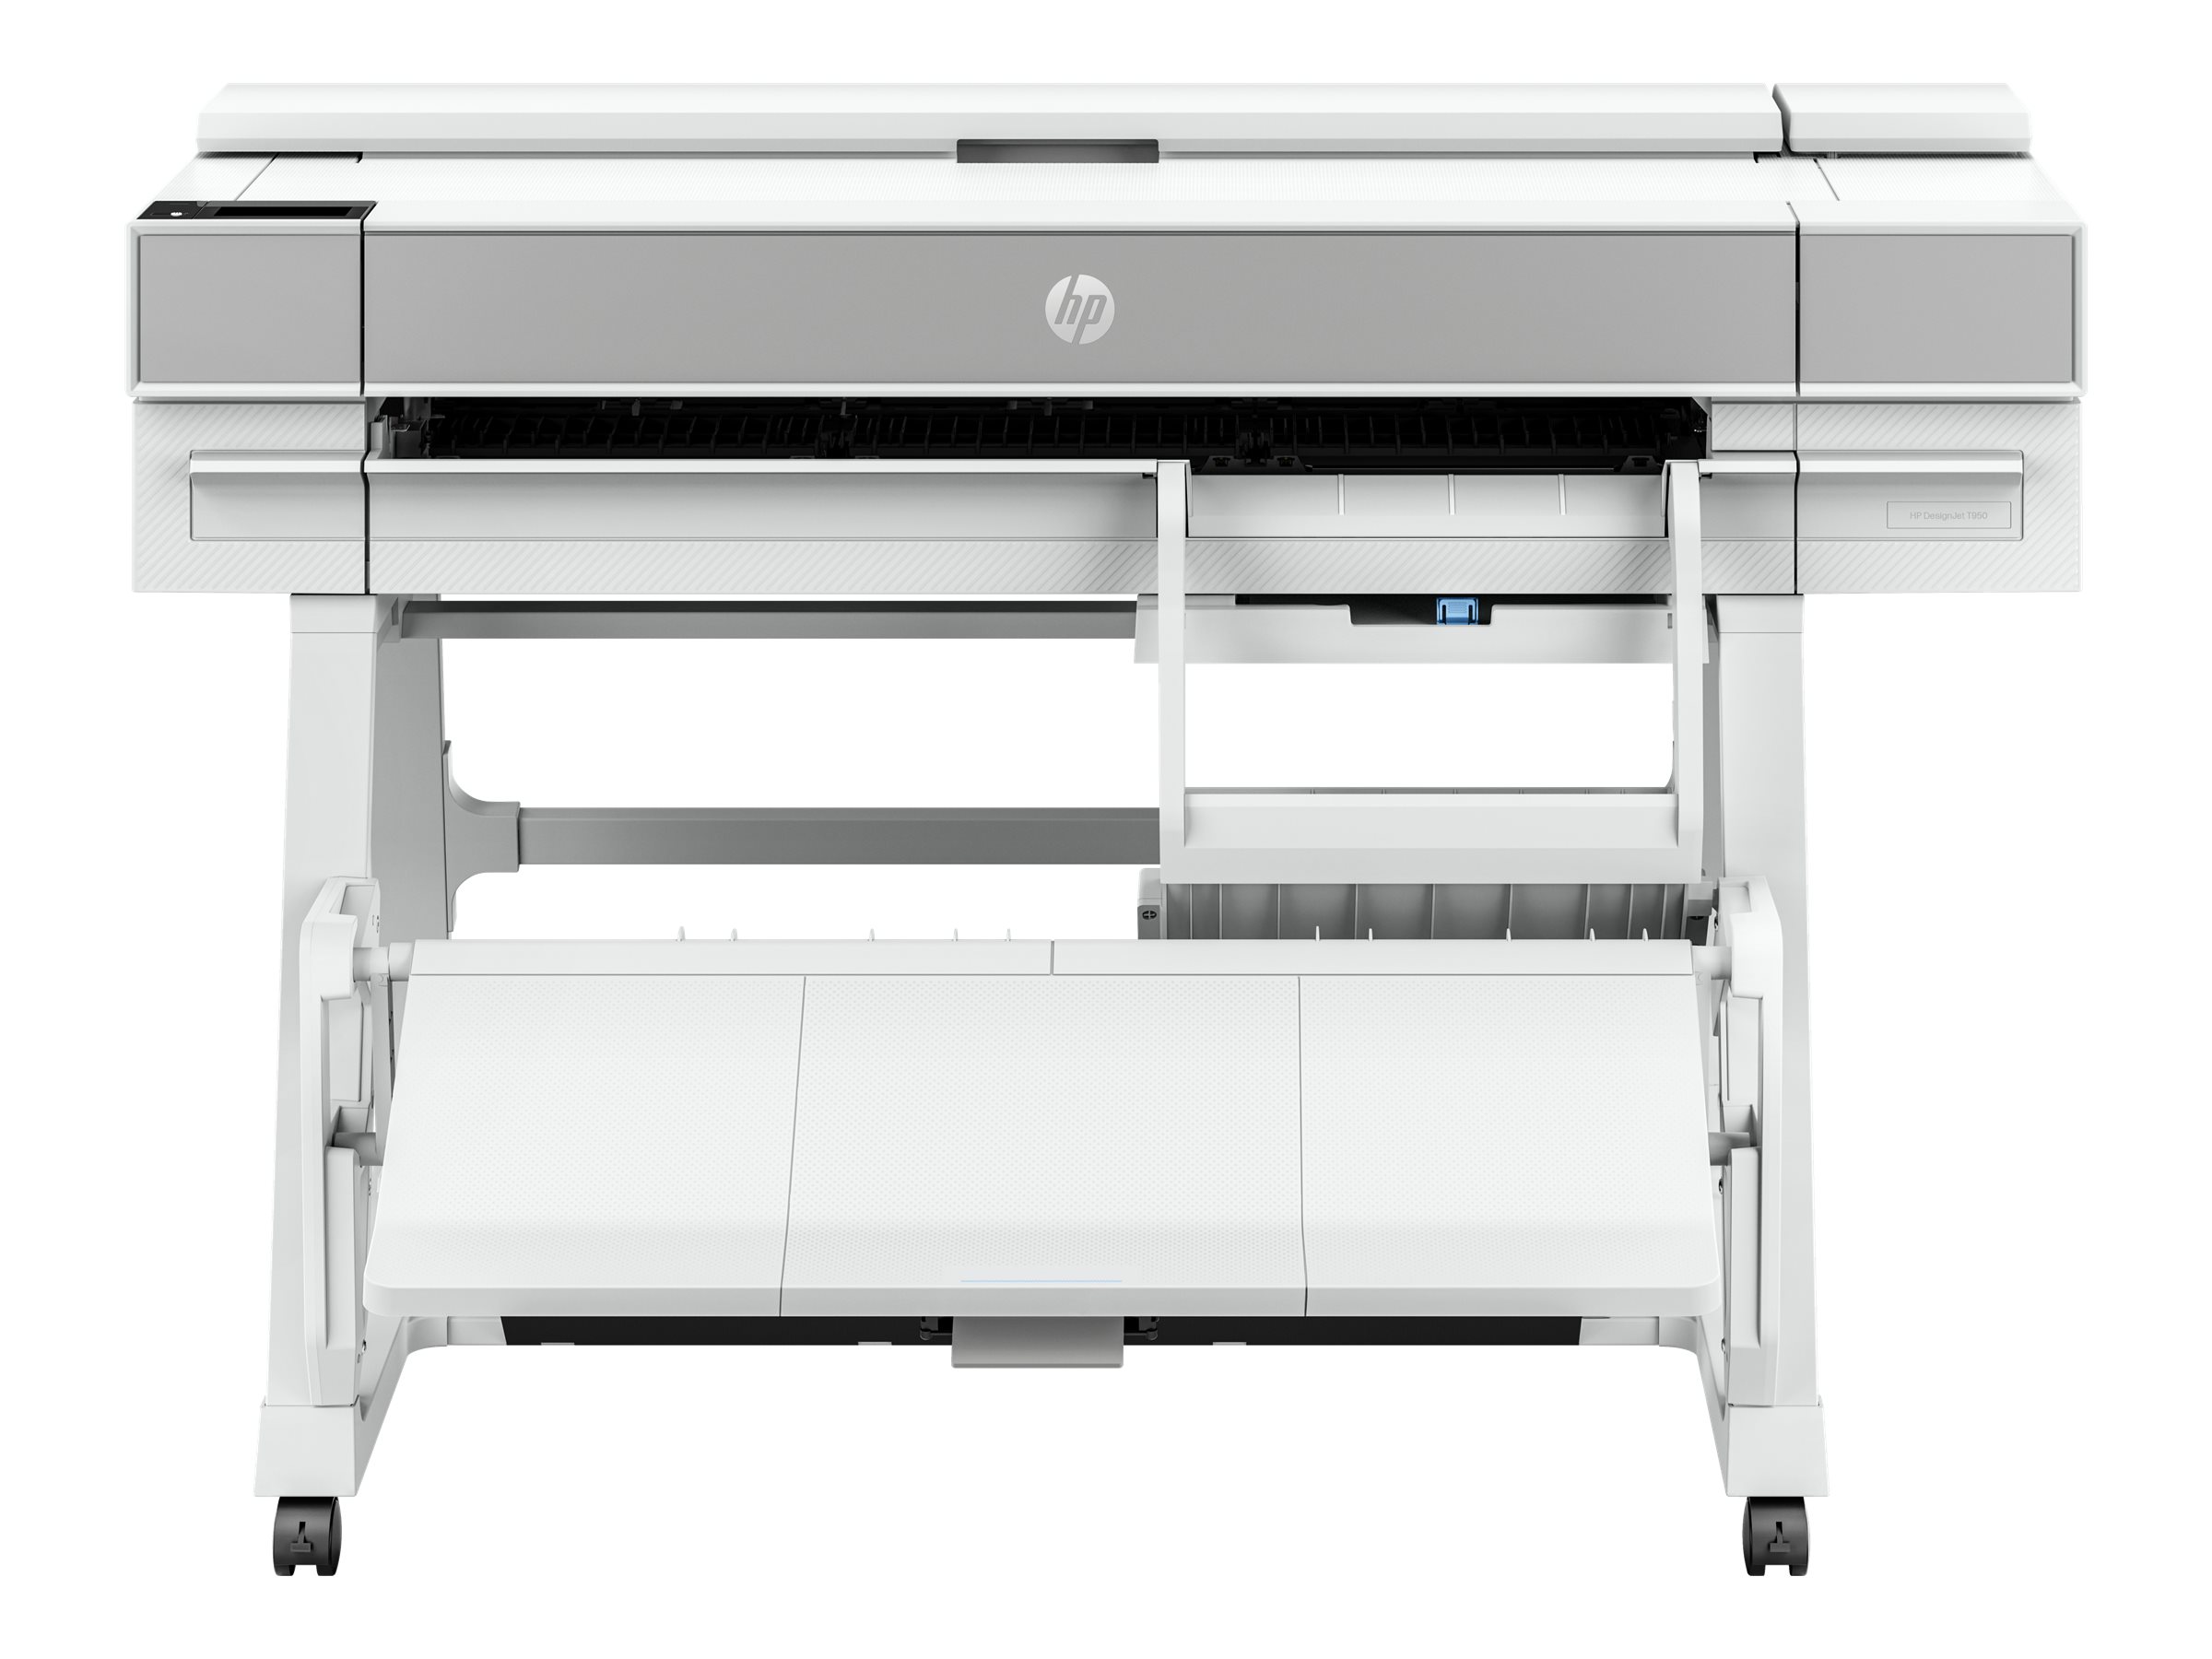 HP DesignJet T950 - 36" imprimante grand format - couleur - jet d'encre - 914 x 1676 mm - 2 400 x 1 200 ppp - jusqu'à 0.35 min/page (mono) / jusqu'à 0.35 min/page (couleur) - capacité : 1 inclinaison - Gigabit LAN, Wi-Fi - outil de coupe - 2Y9H1A#B19 - Imprimantes jet d'encre